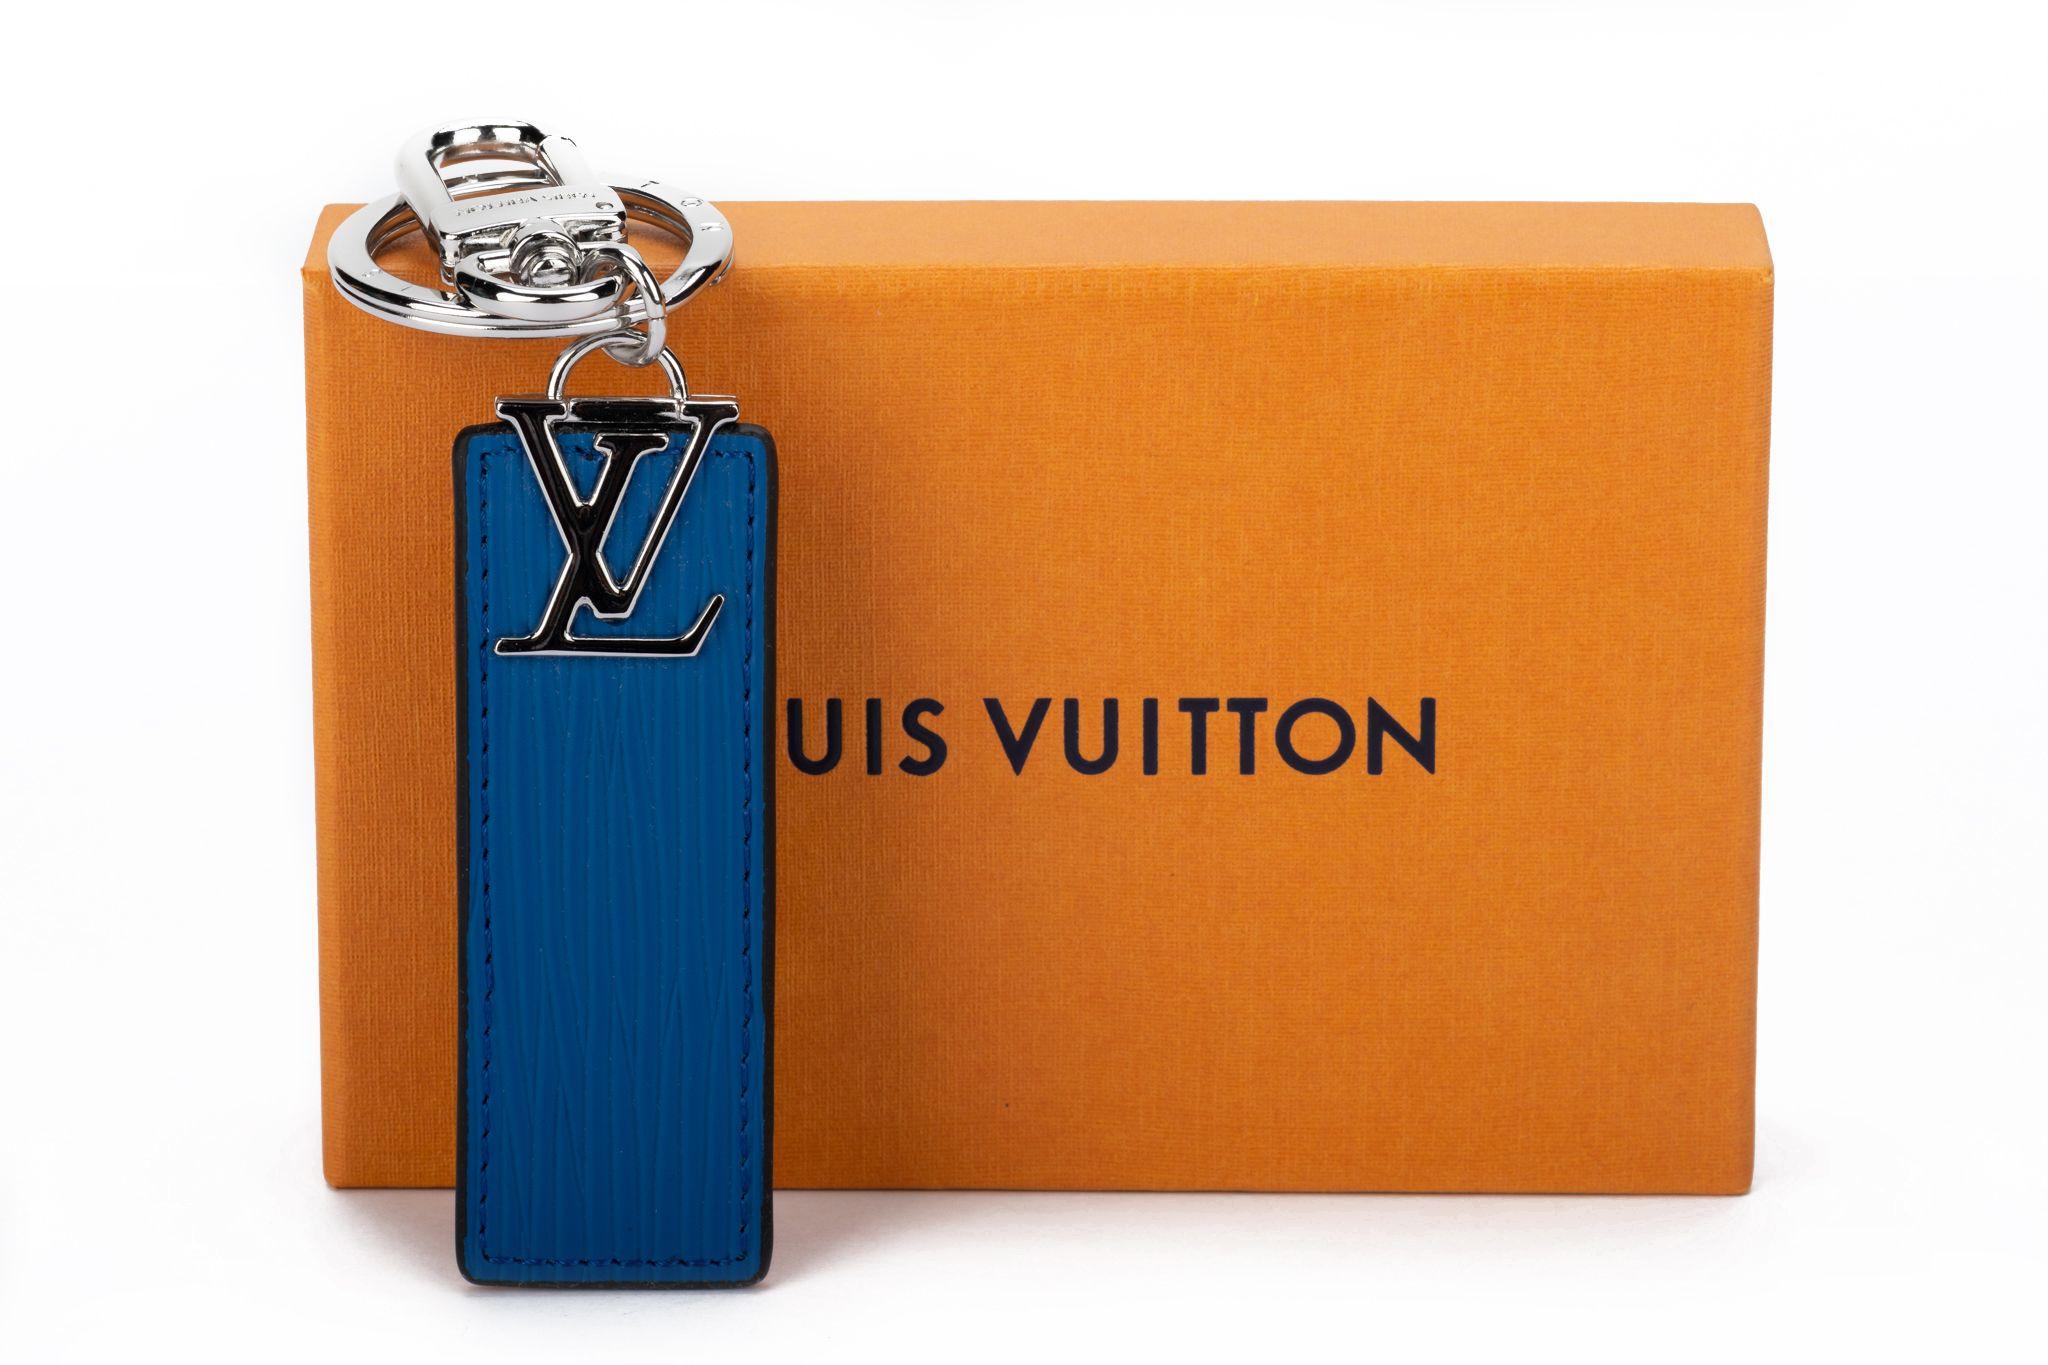 Porte-clés ou breloque de sac Louis Vuitton, réversible bleu/noir, avec des attaches argentées. Excellent état avec boîte et housse d'origine.